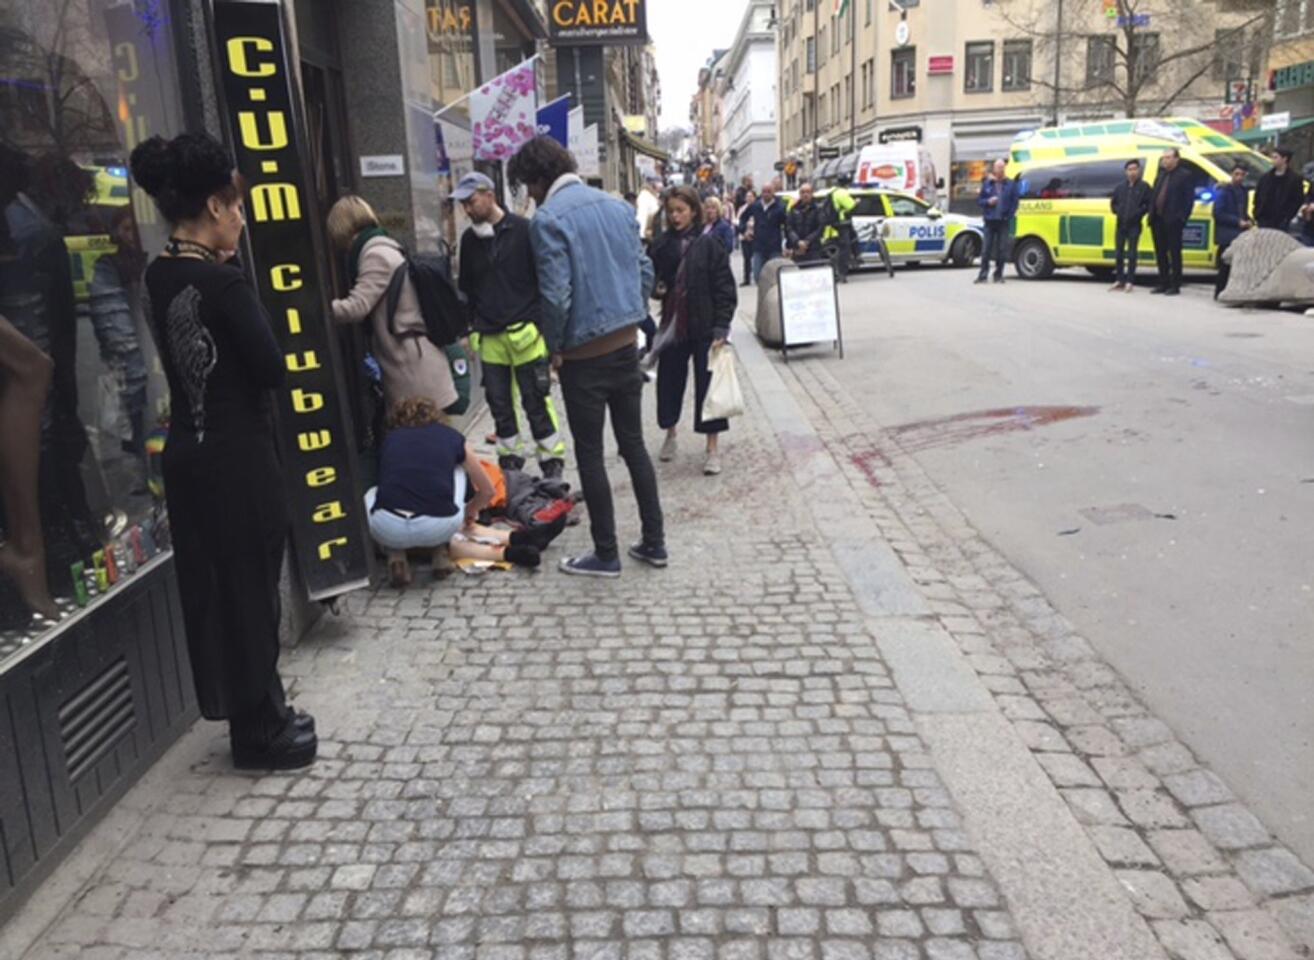 Miembros de los servicios de emergencia atienden a uno de los heridos en la zona donde un camión que atropelló a varias personas y se estrelló contra una tienda de la calle comercial de Drottninggatan en el centro de Estocolmo, Suecia.